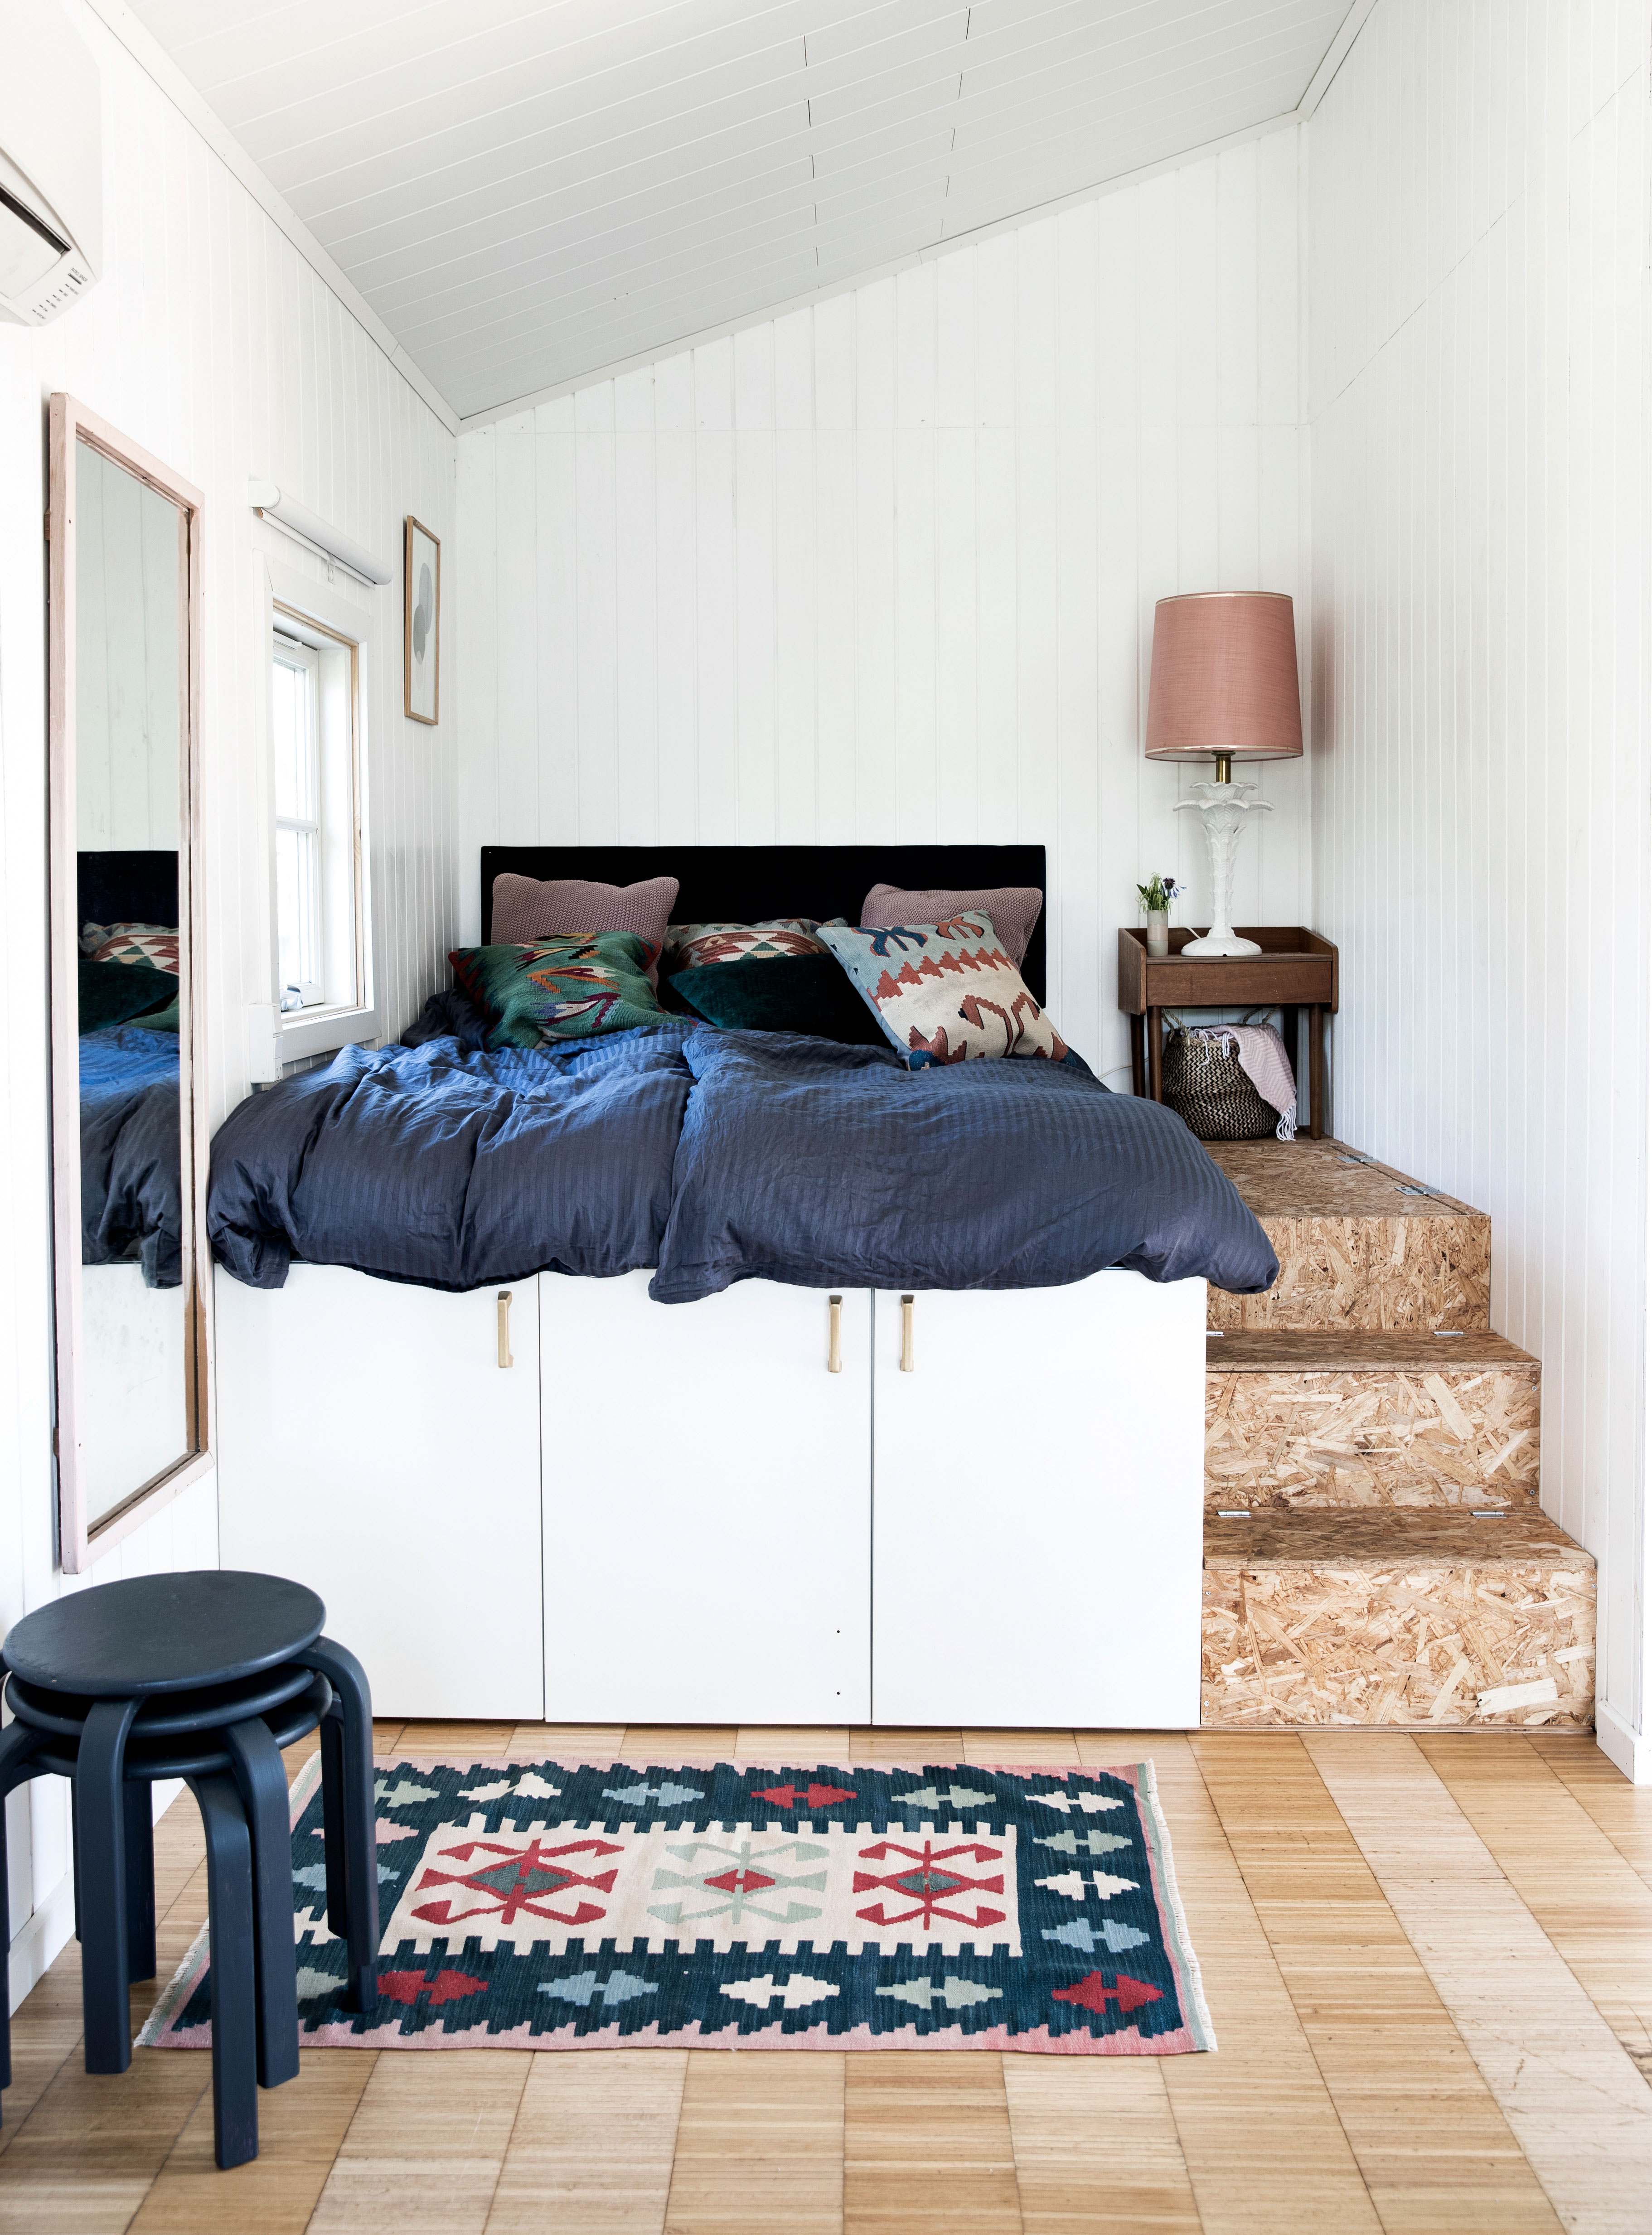 3 fantastiske hjemmebyggede senge med - se dem ALT.dk